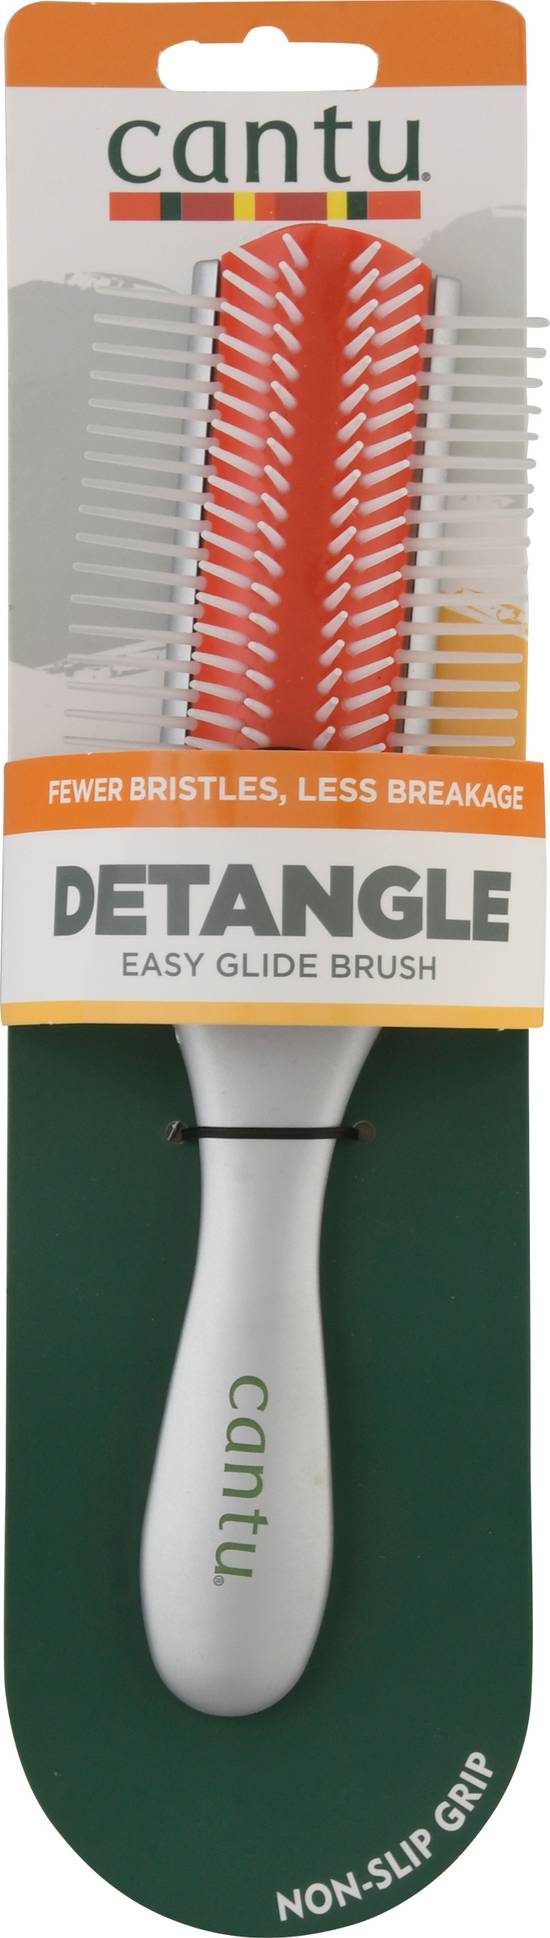 Cantu Detangle Easy Glide Brush